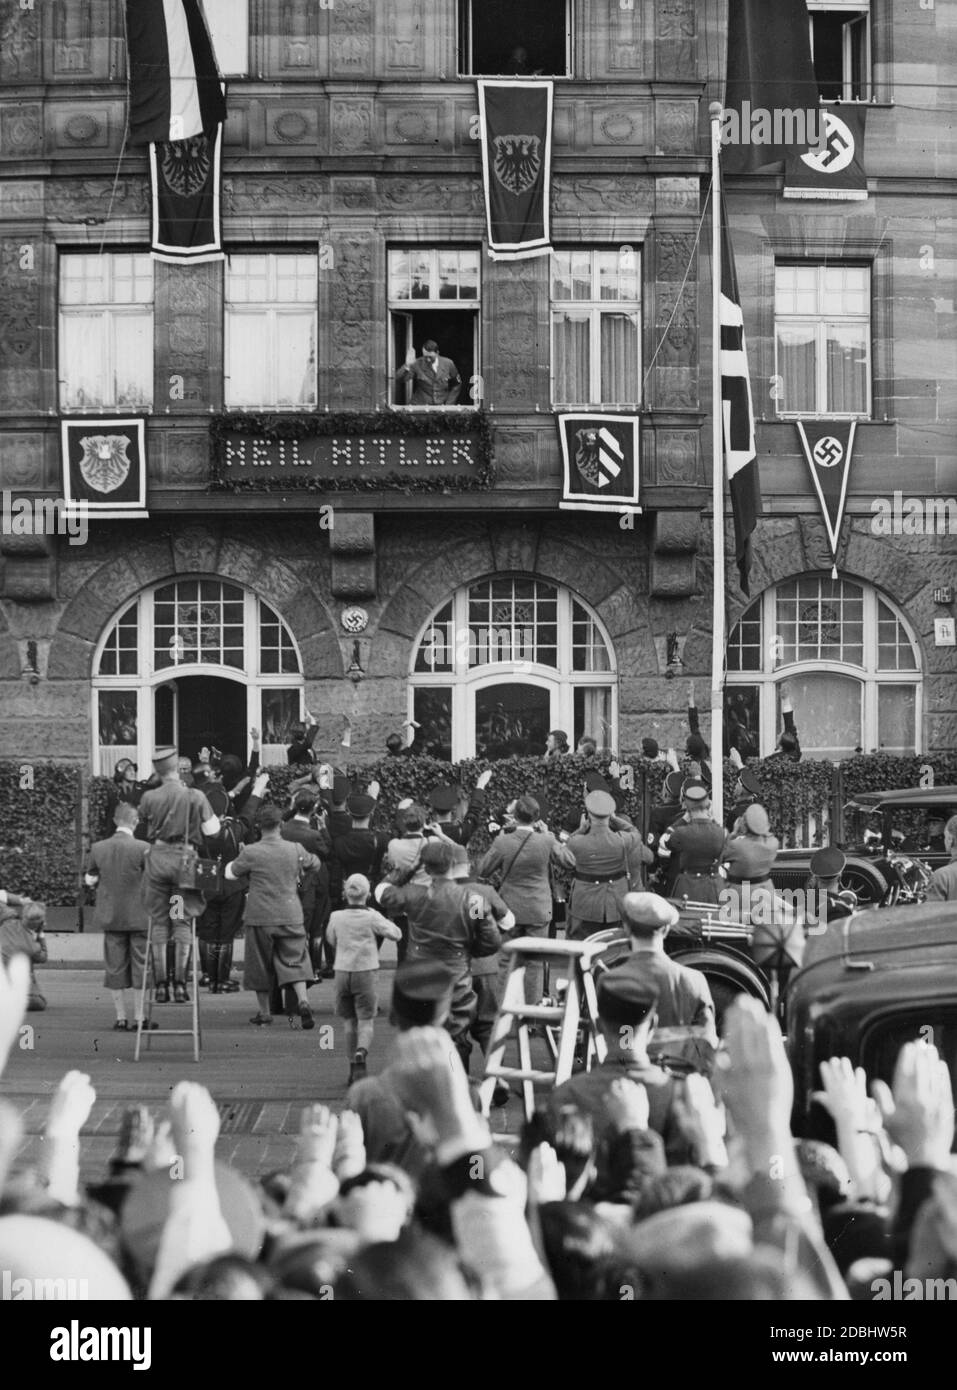 "Adolf Hitler begrüßt die begeisterte Nürnberger Bevölkerung aus dem Fenster des Hotels Deutscher Hof, das mit Hakenkreuzfahnen und dem Wappen der Stadt Nürnberg geschmückt ist. Unter seinem Fenster ist die Inschrift ''Heil Hitler''.' Stockfoto